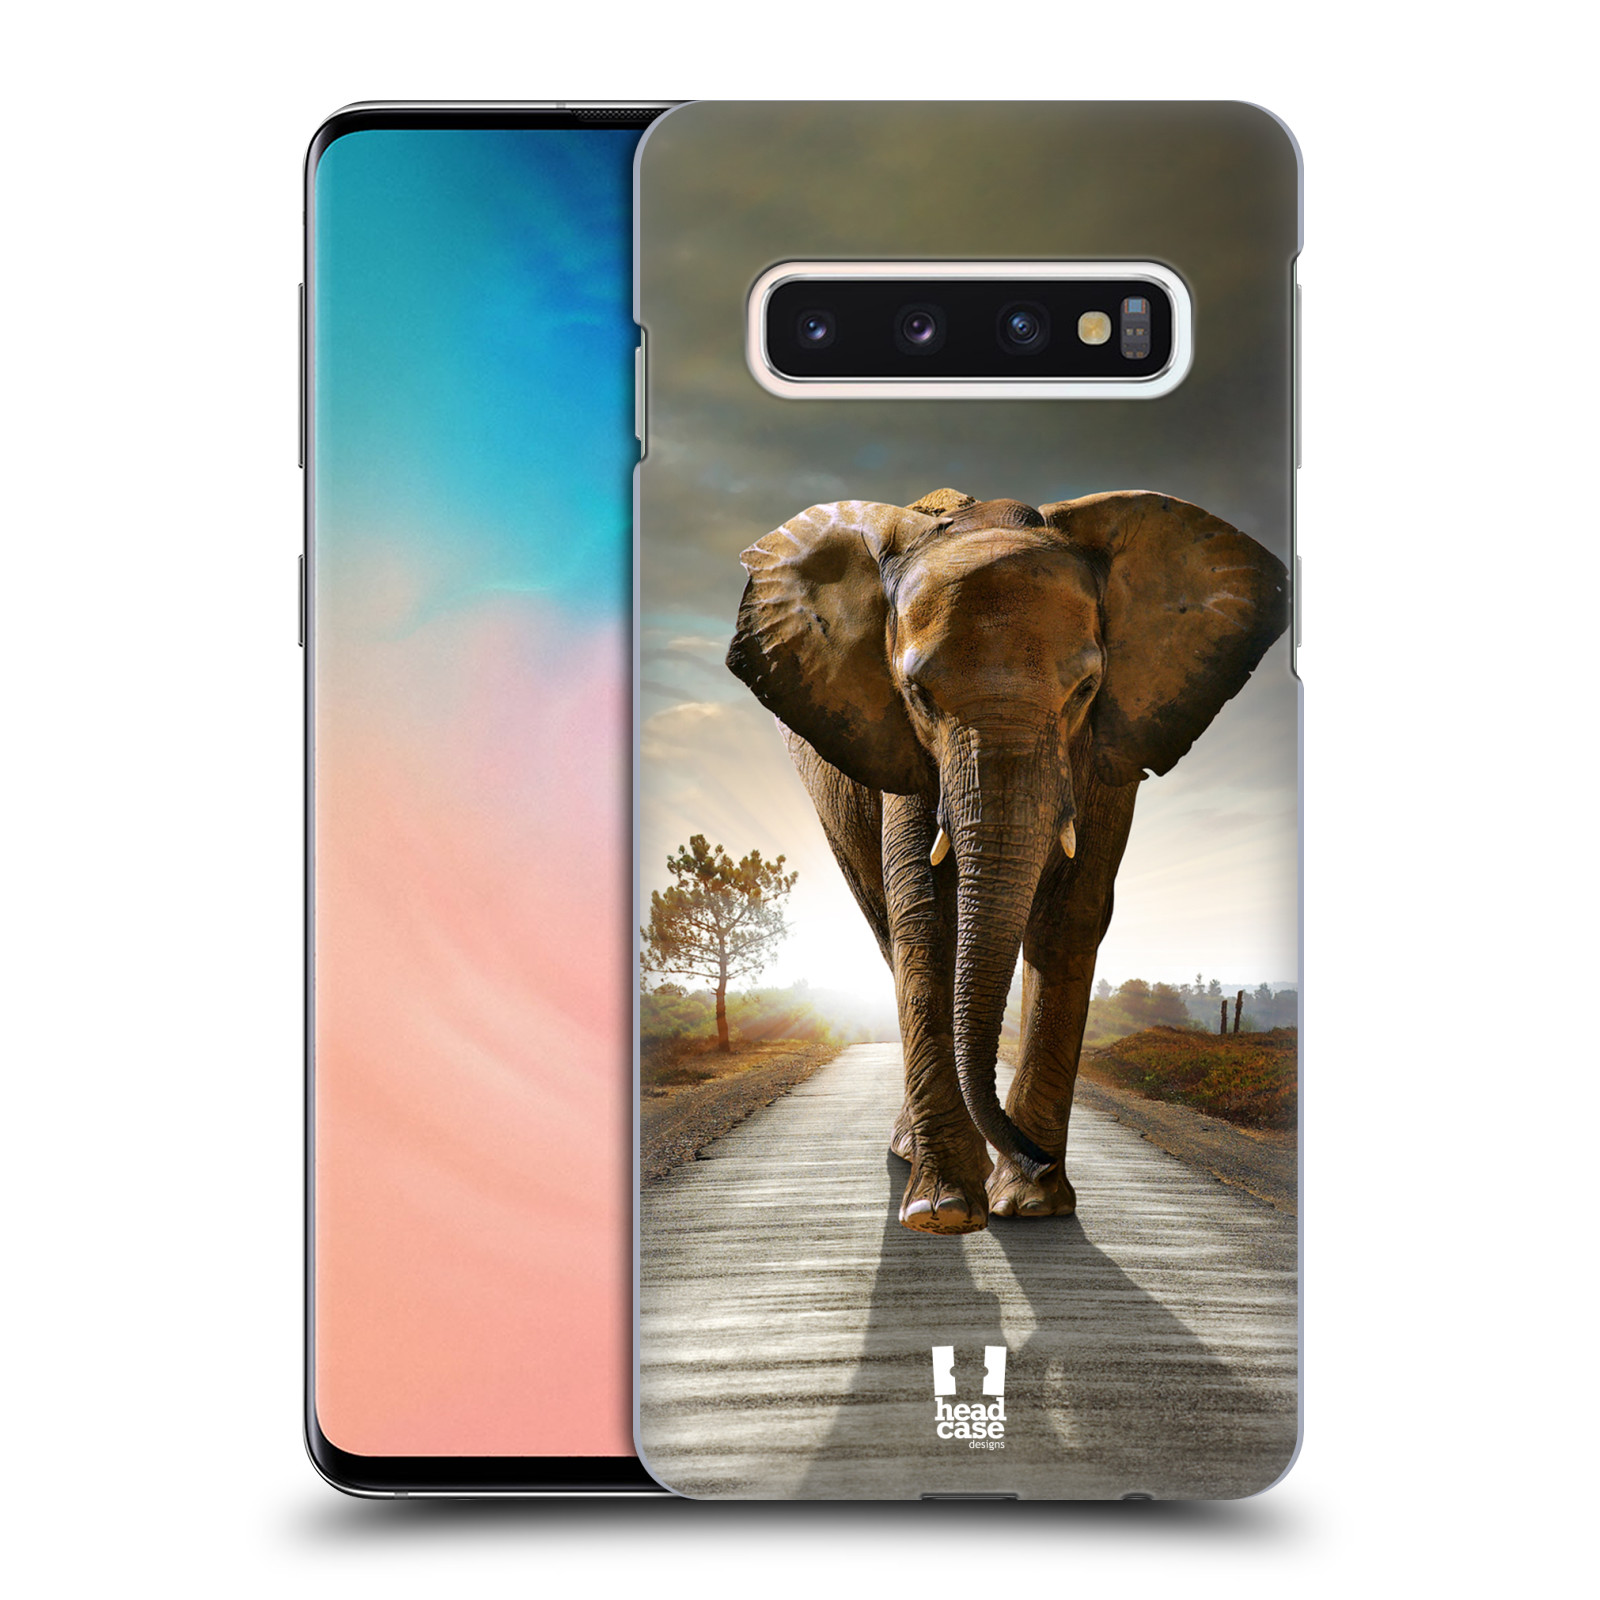 Zadní obal pro mobil Samsung Galaxy S10 - HEAD CASE - Svět zvířat kráčející slon